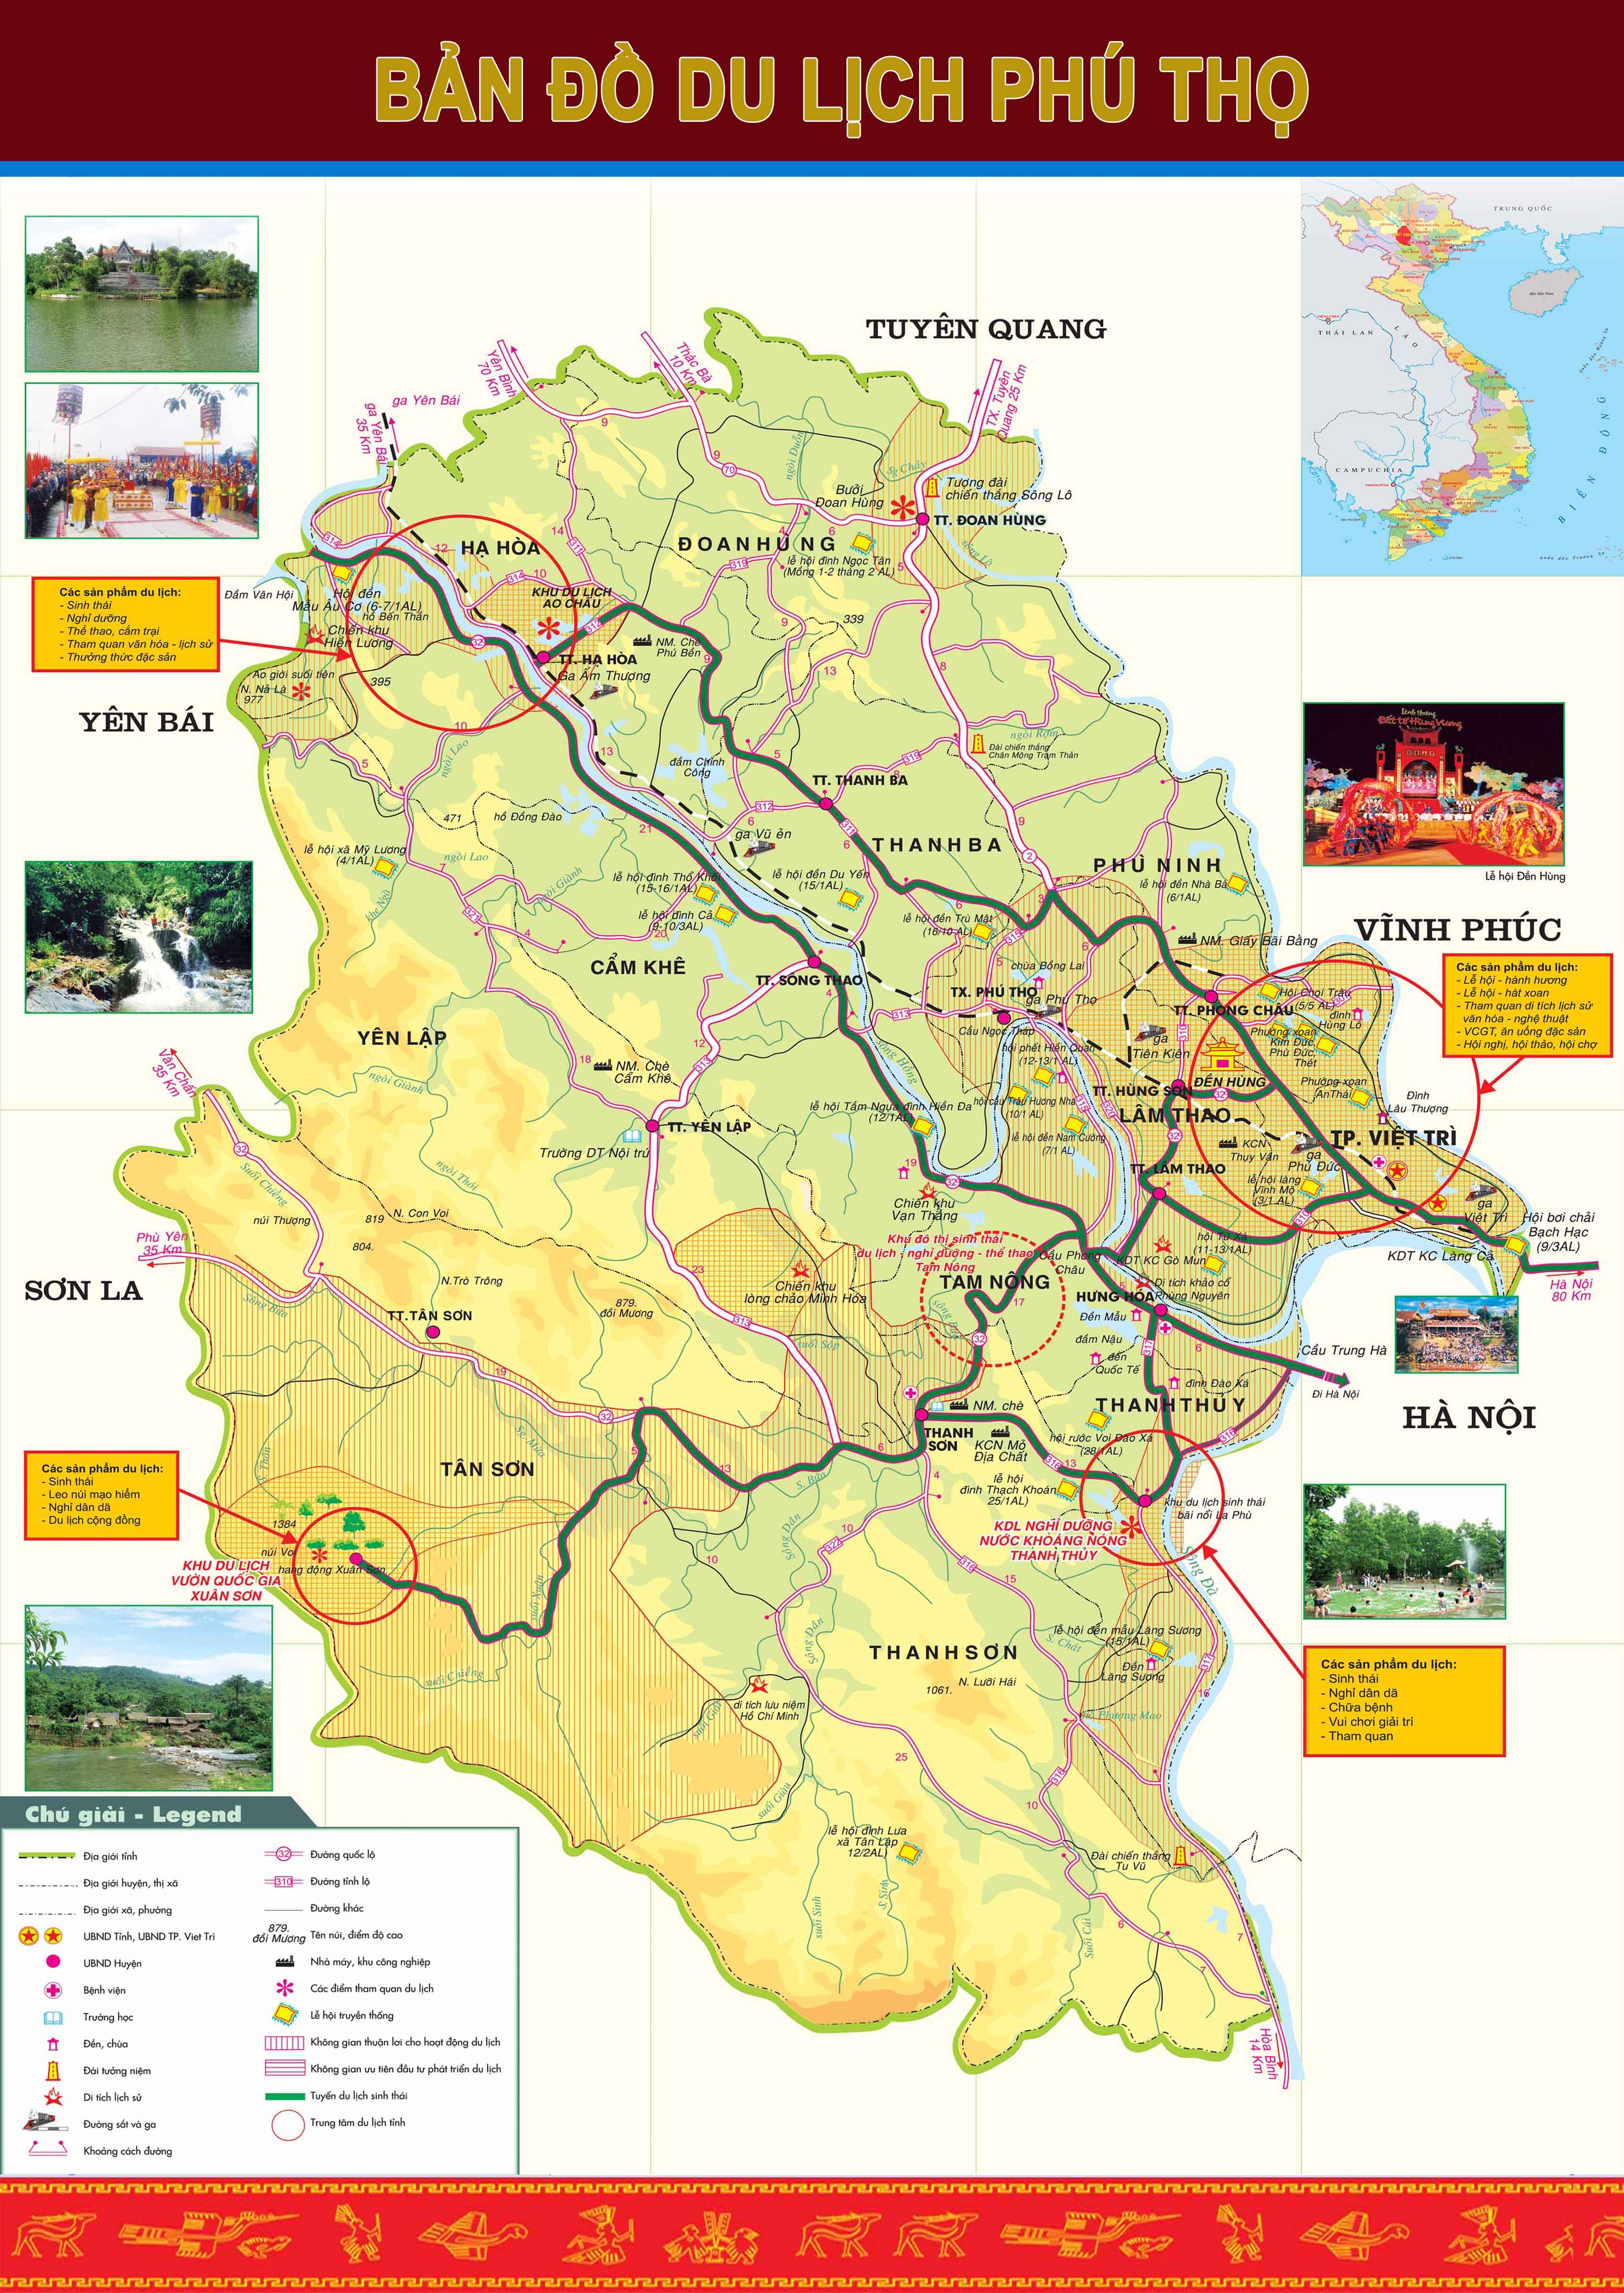 Bản đồ hành chính tỉnh Phú Thọ: Tìm hiểu về tất cả các khu vực của tỉnh Phú Thọ thông qua hình ảnh bản đồ hành chính mới nhất năm